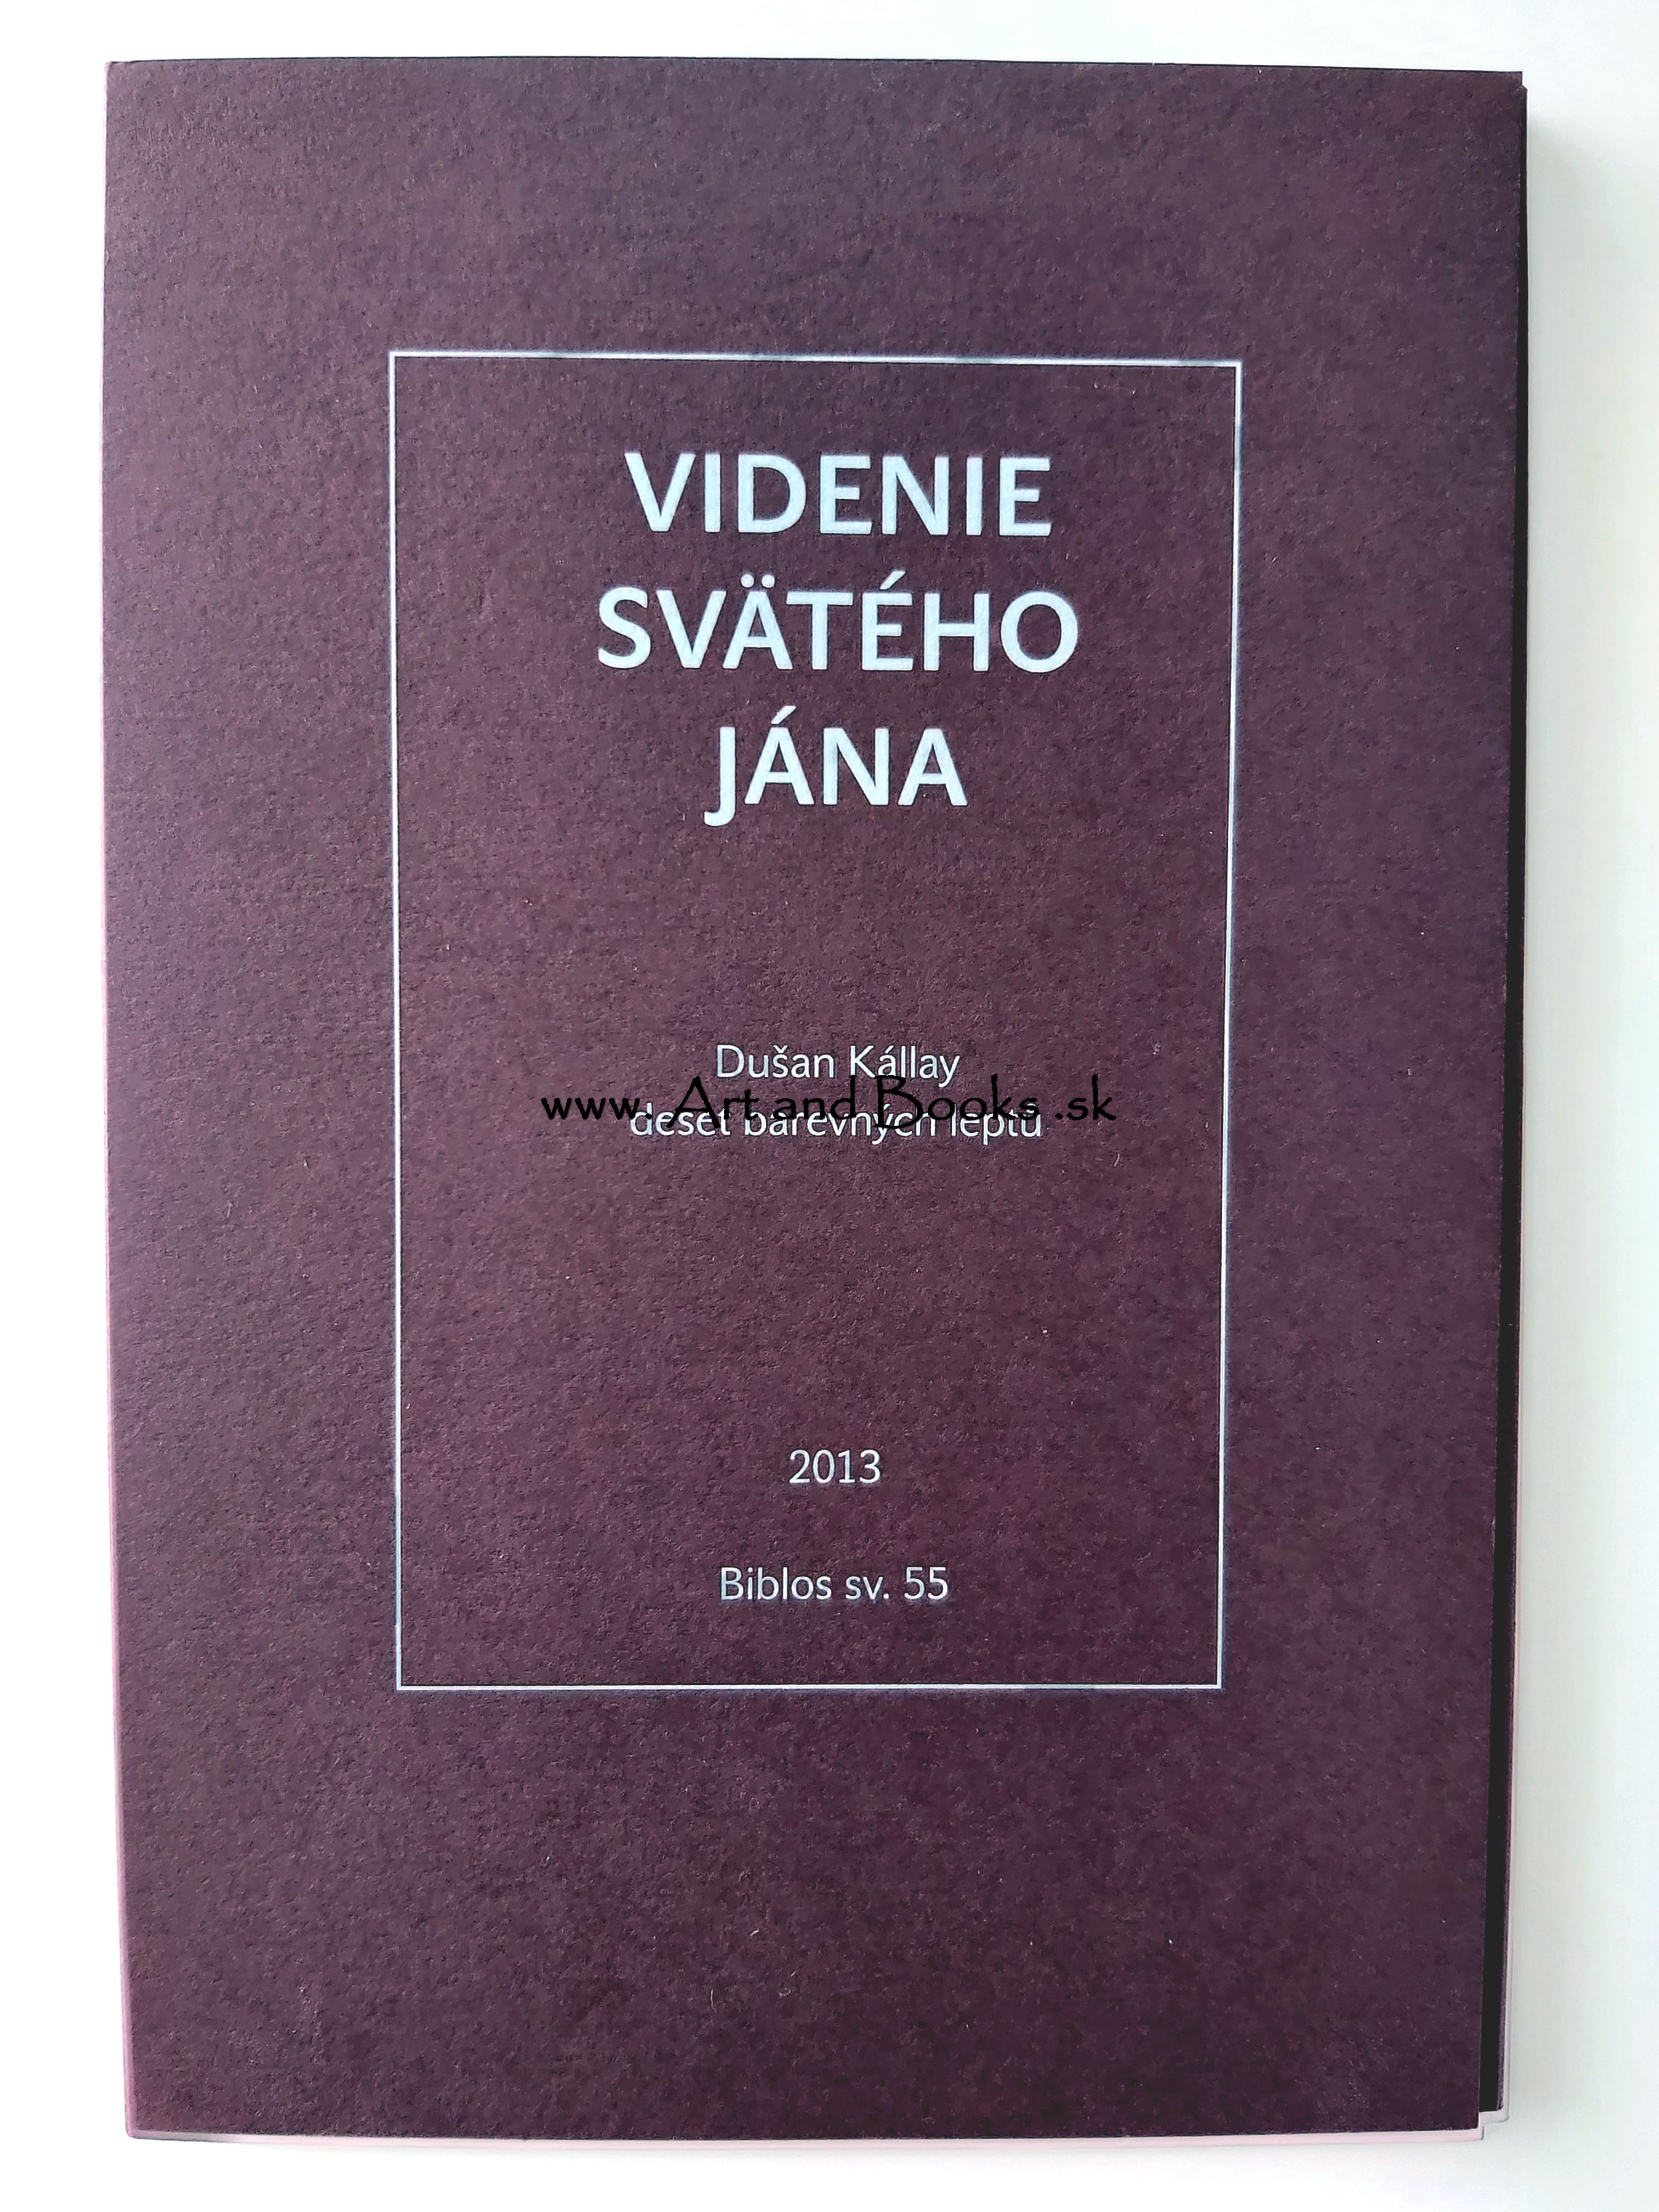 Dušan Kállay - Videnie svätého Jána (2013) (sold/predané) ● 123229